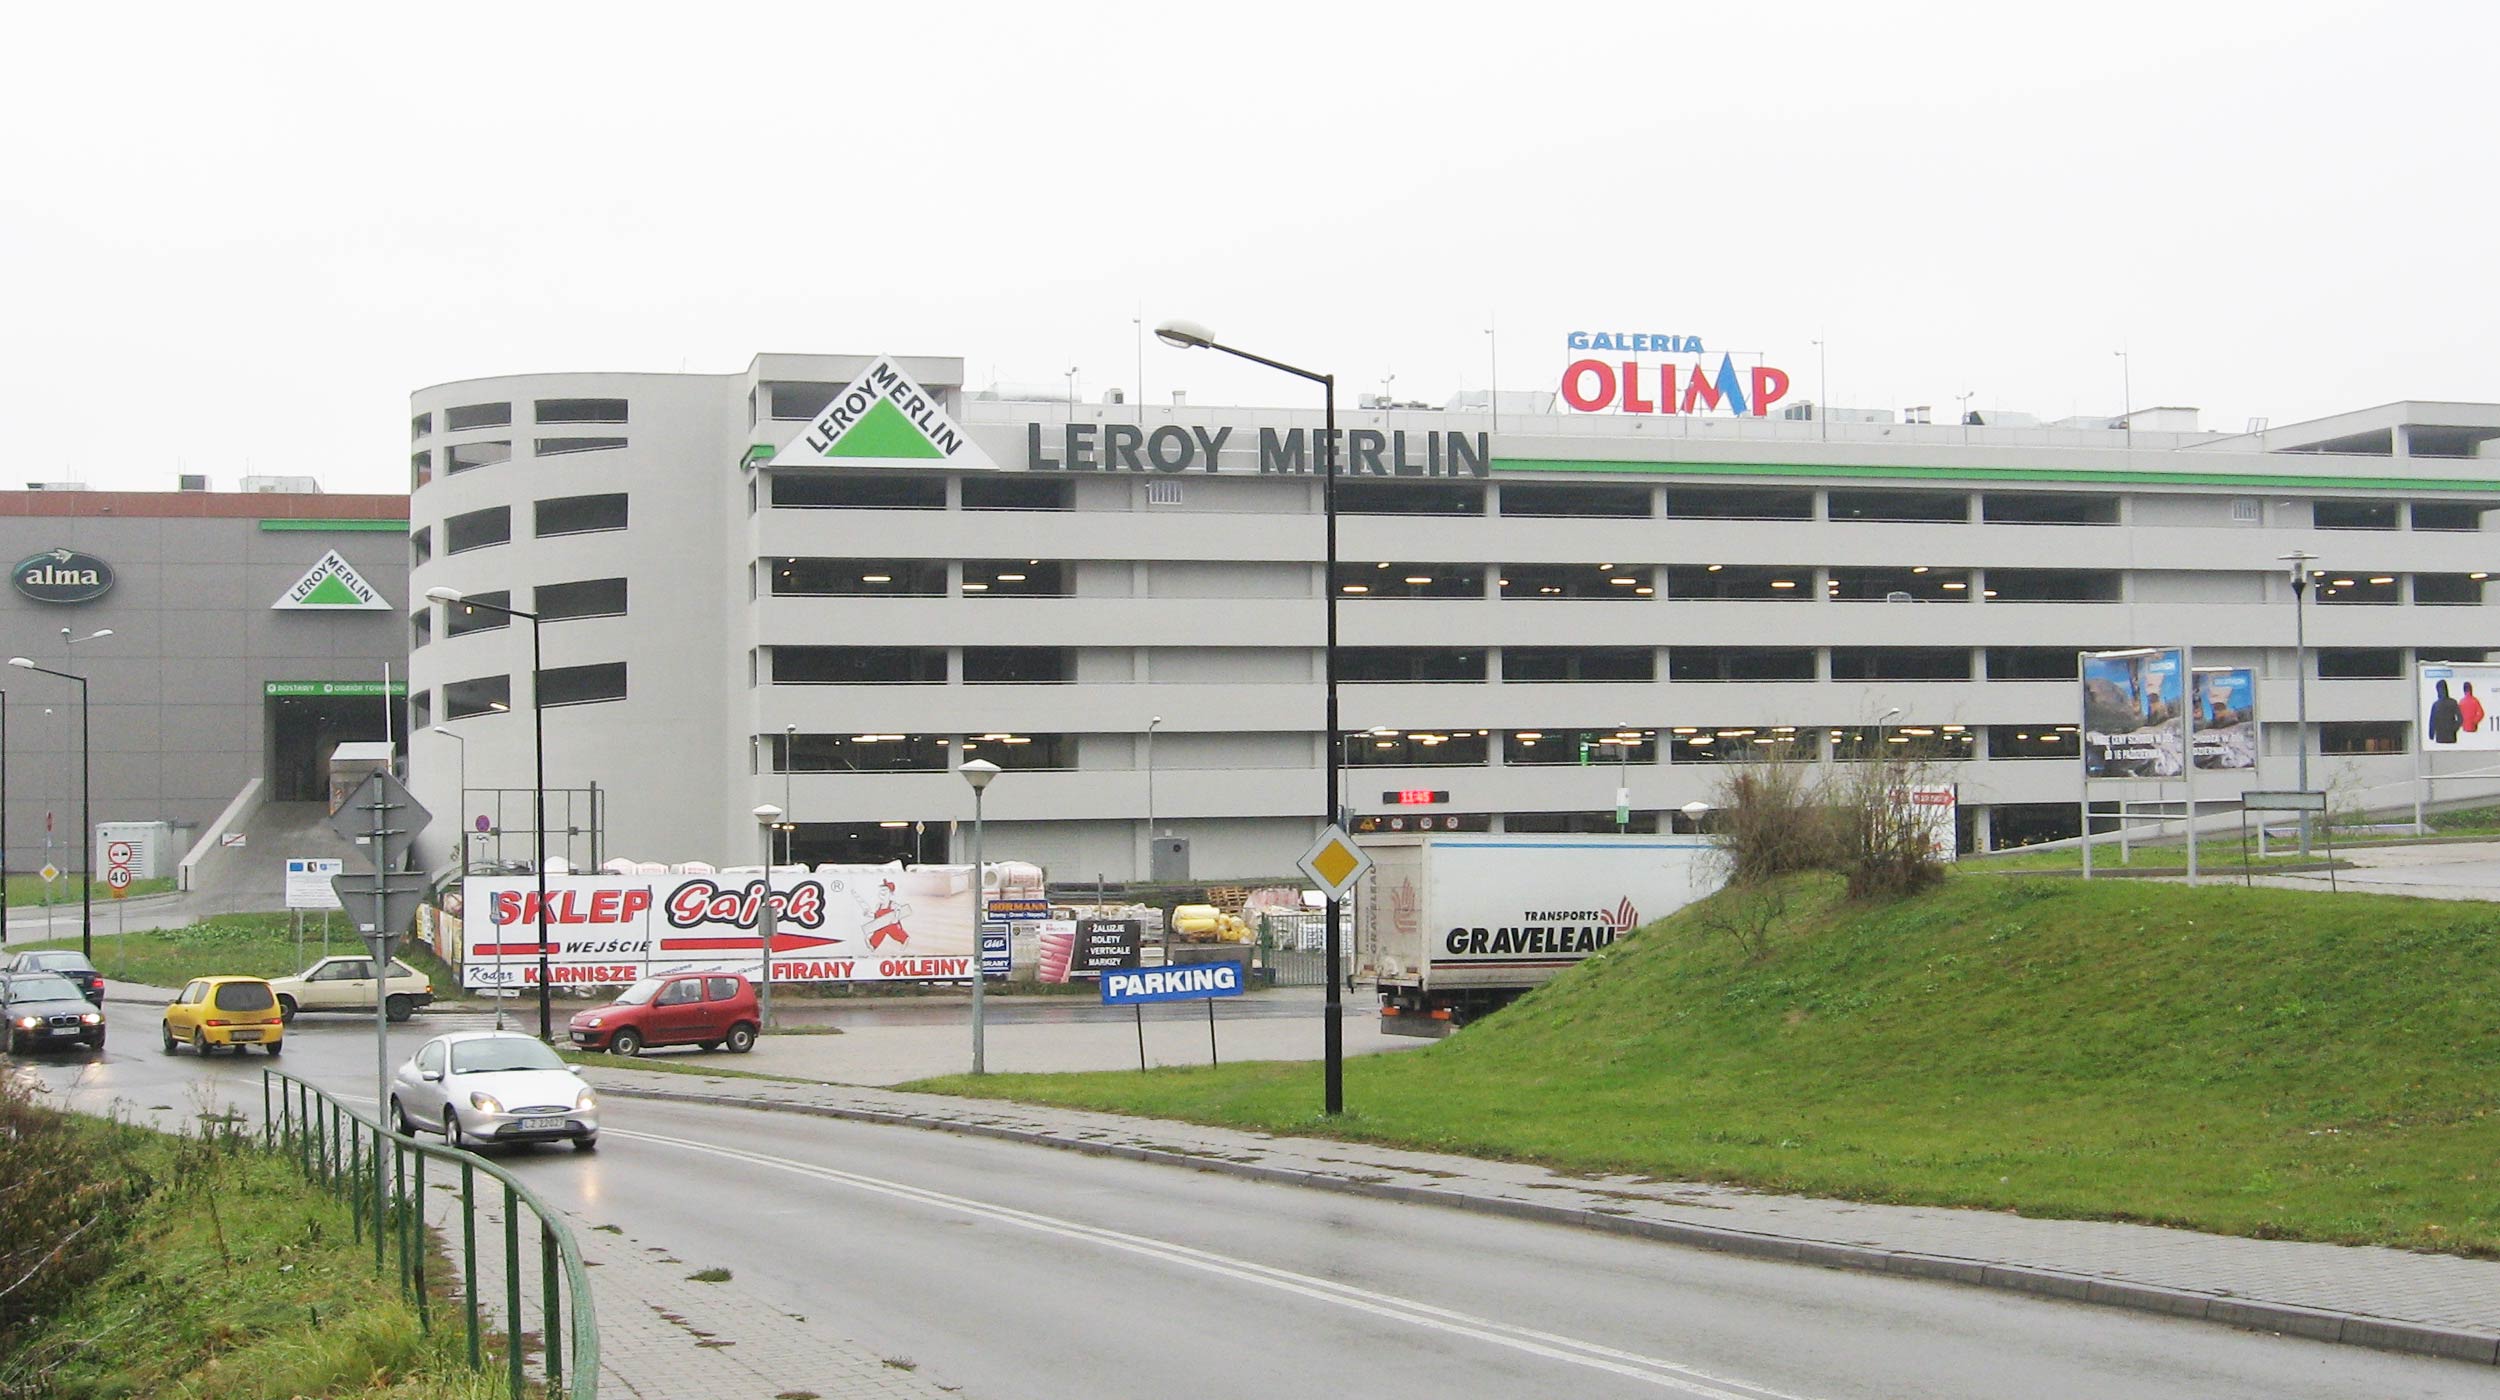 Si tratta del centro commerciale più grande di tutta la provincia di Lublino, grazie alla sua superficie totale pari a 126.000m².